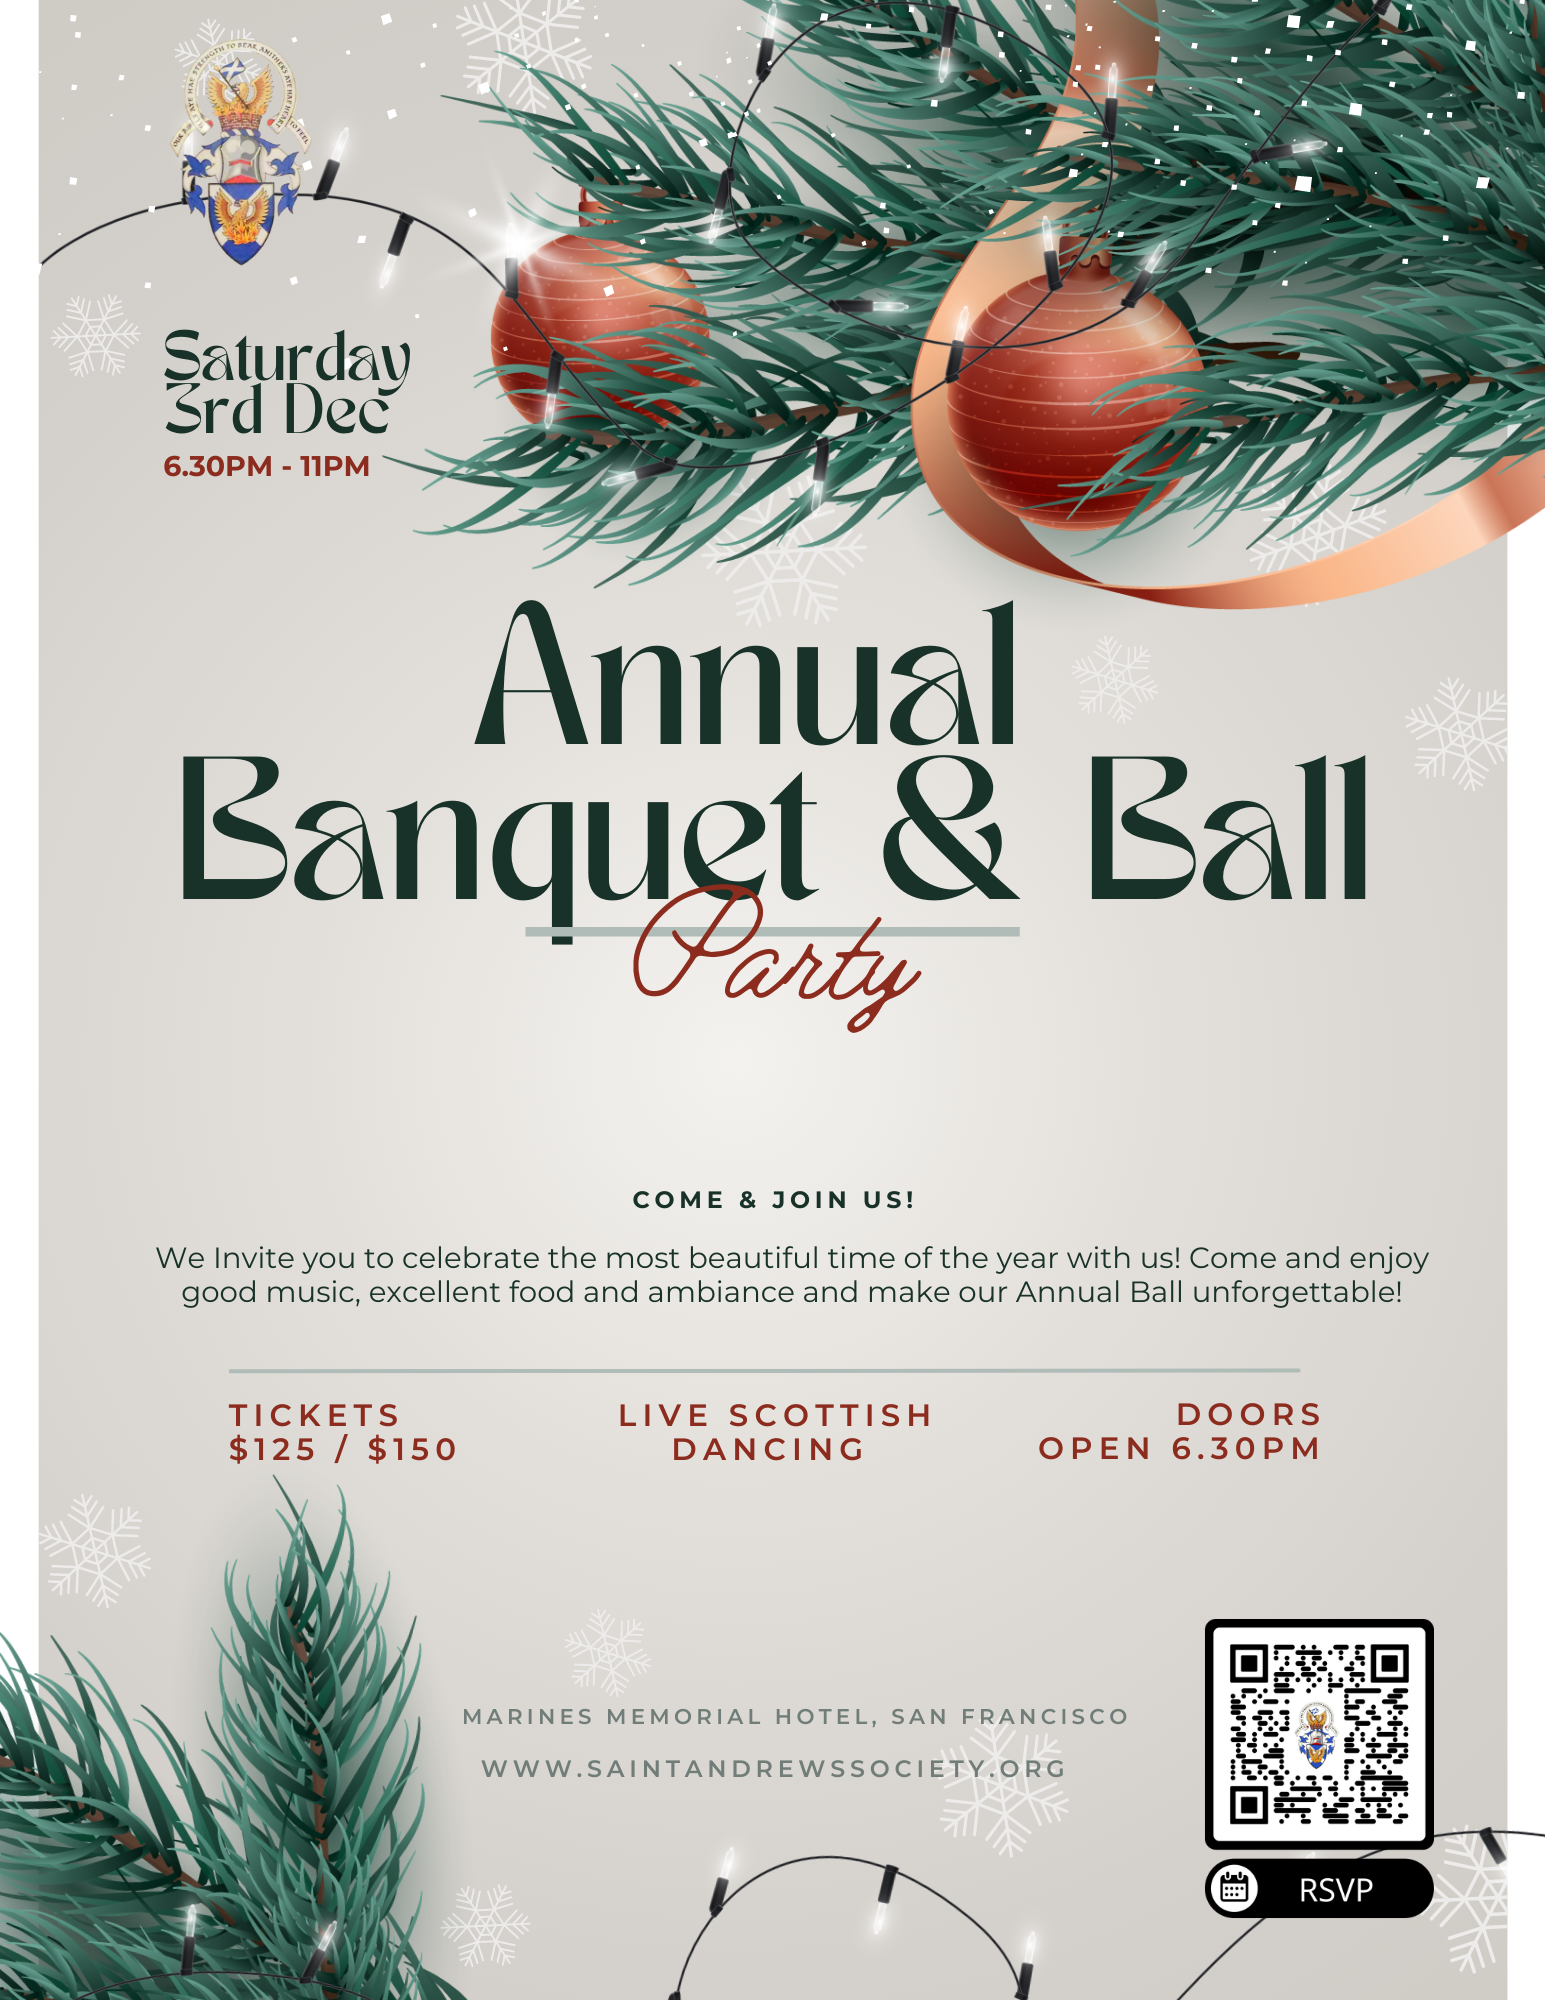 Annual Banquet & Ball